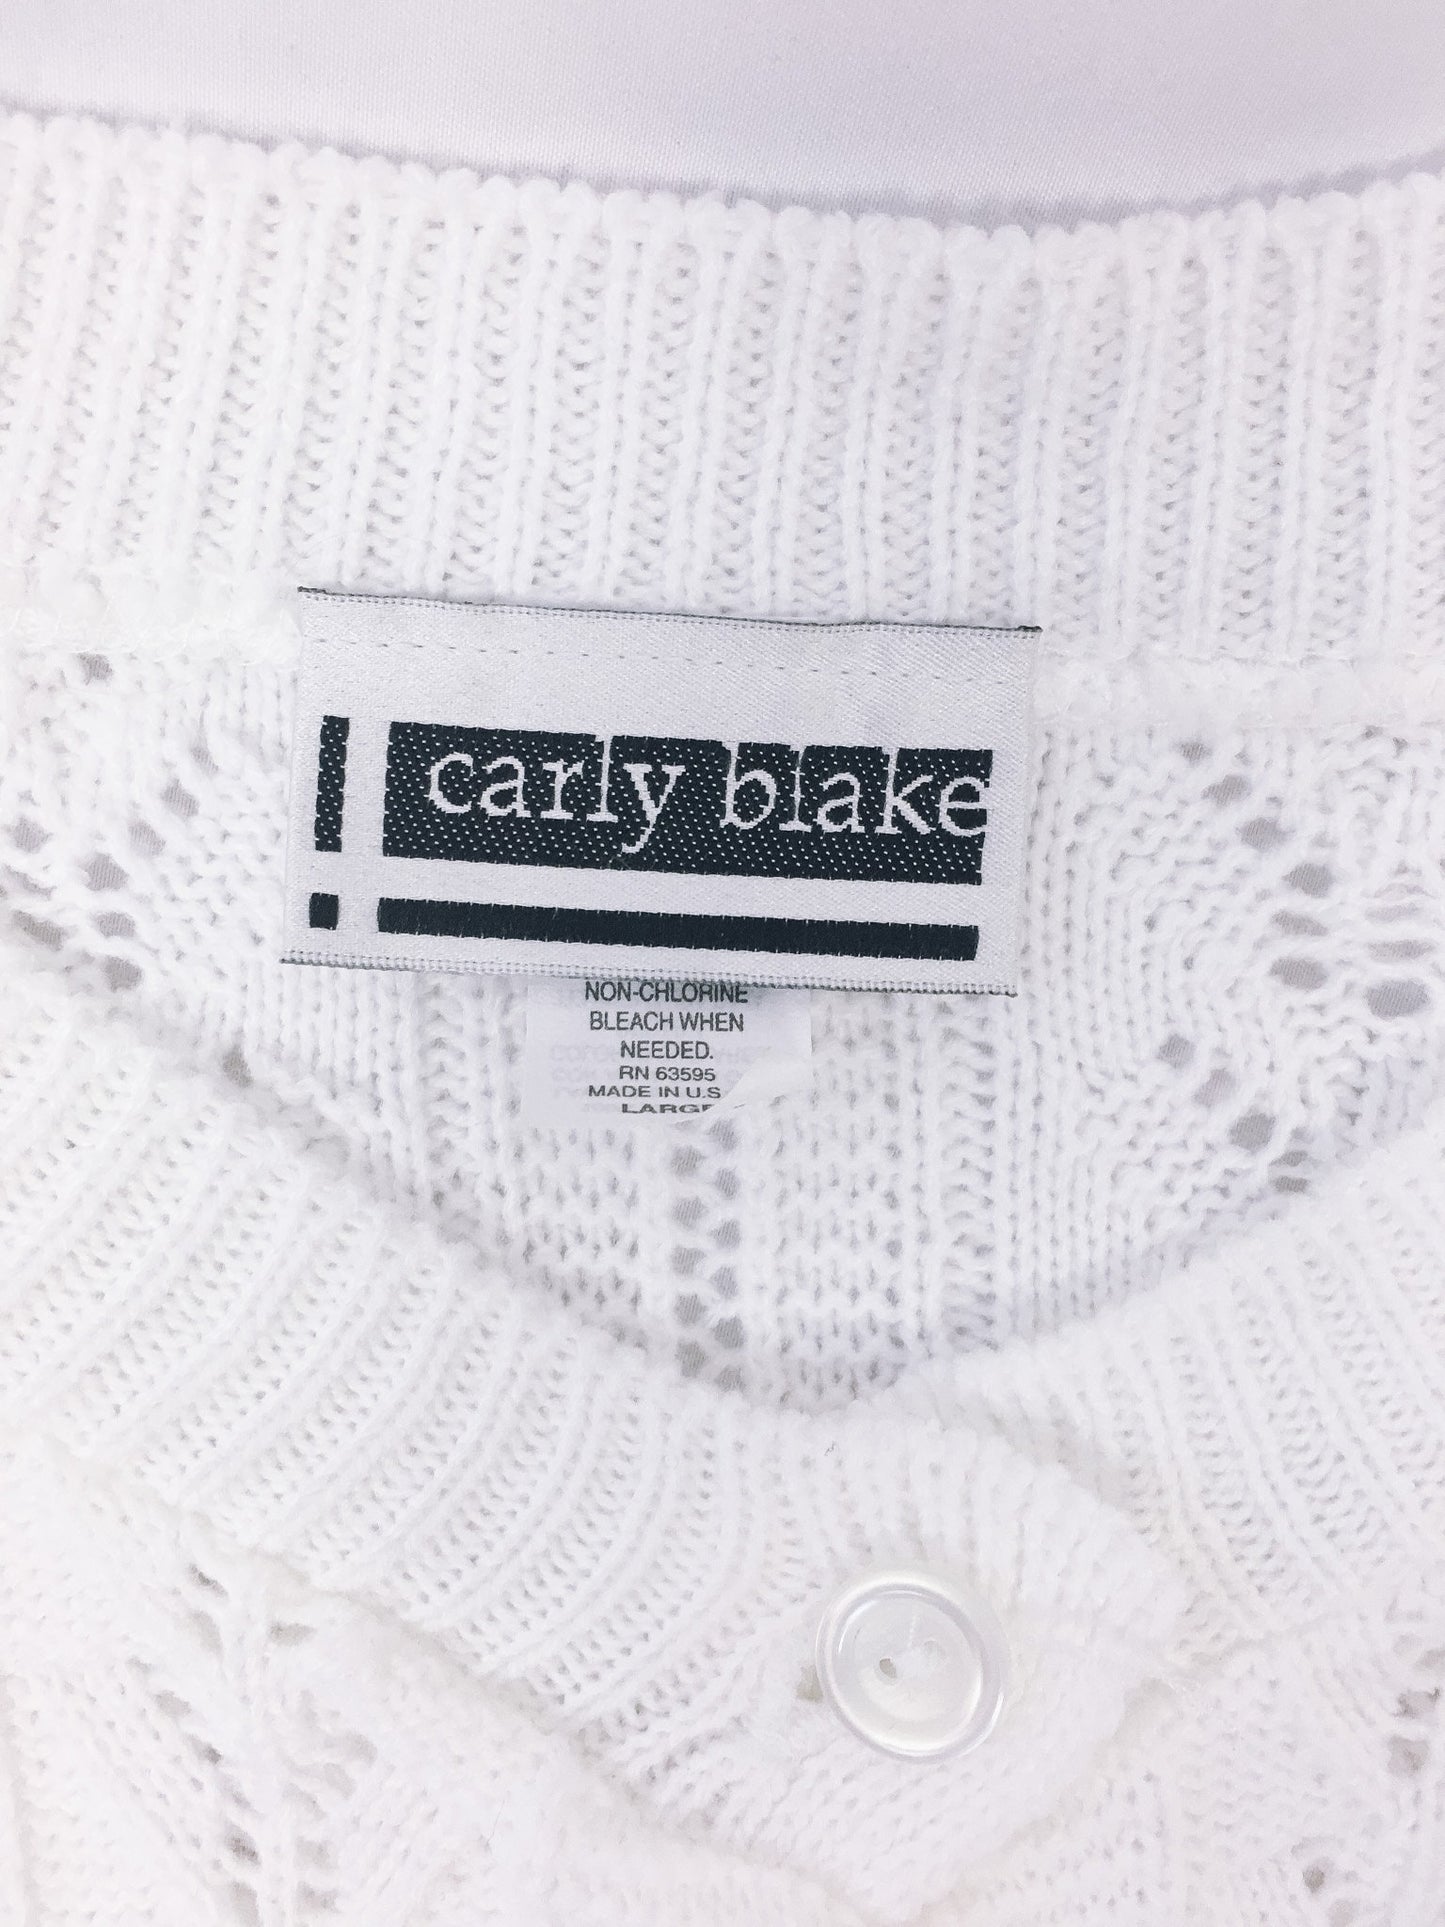 Vintage Carly Blake White Knit Cardigan, Women's Sz. L